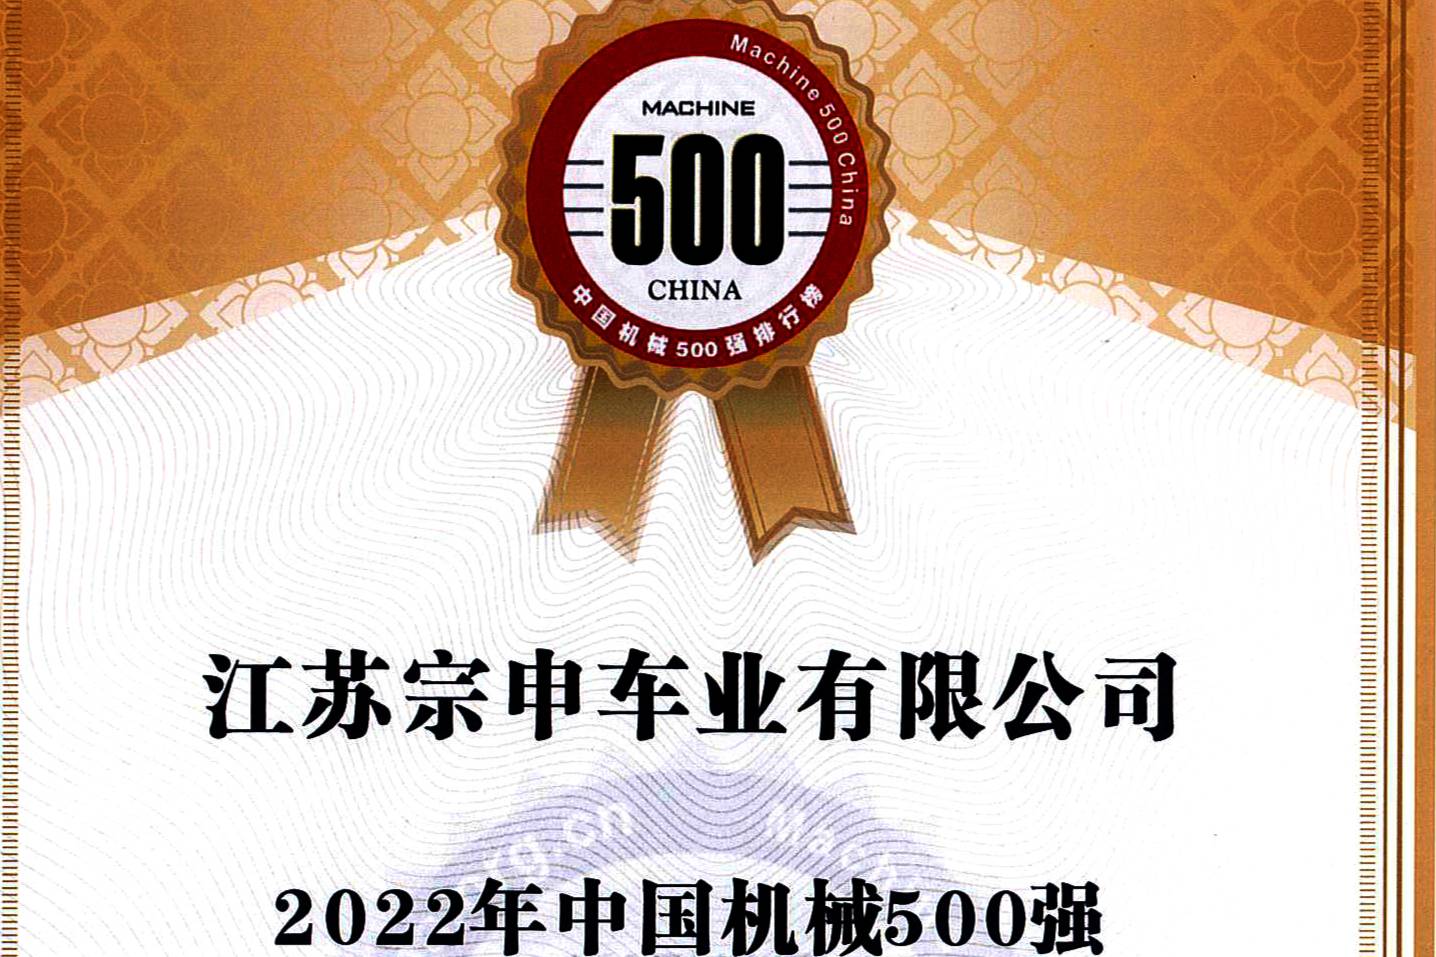 江苏宗申荣登“2022中国机械500强”榜单